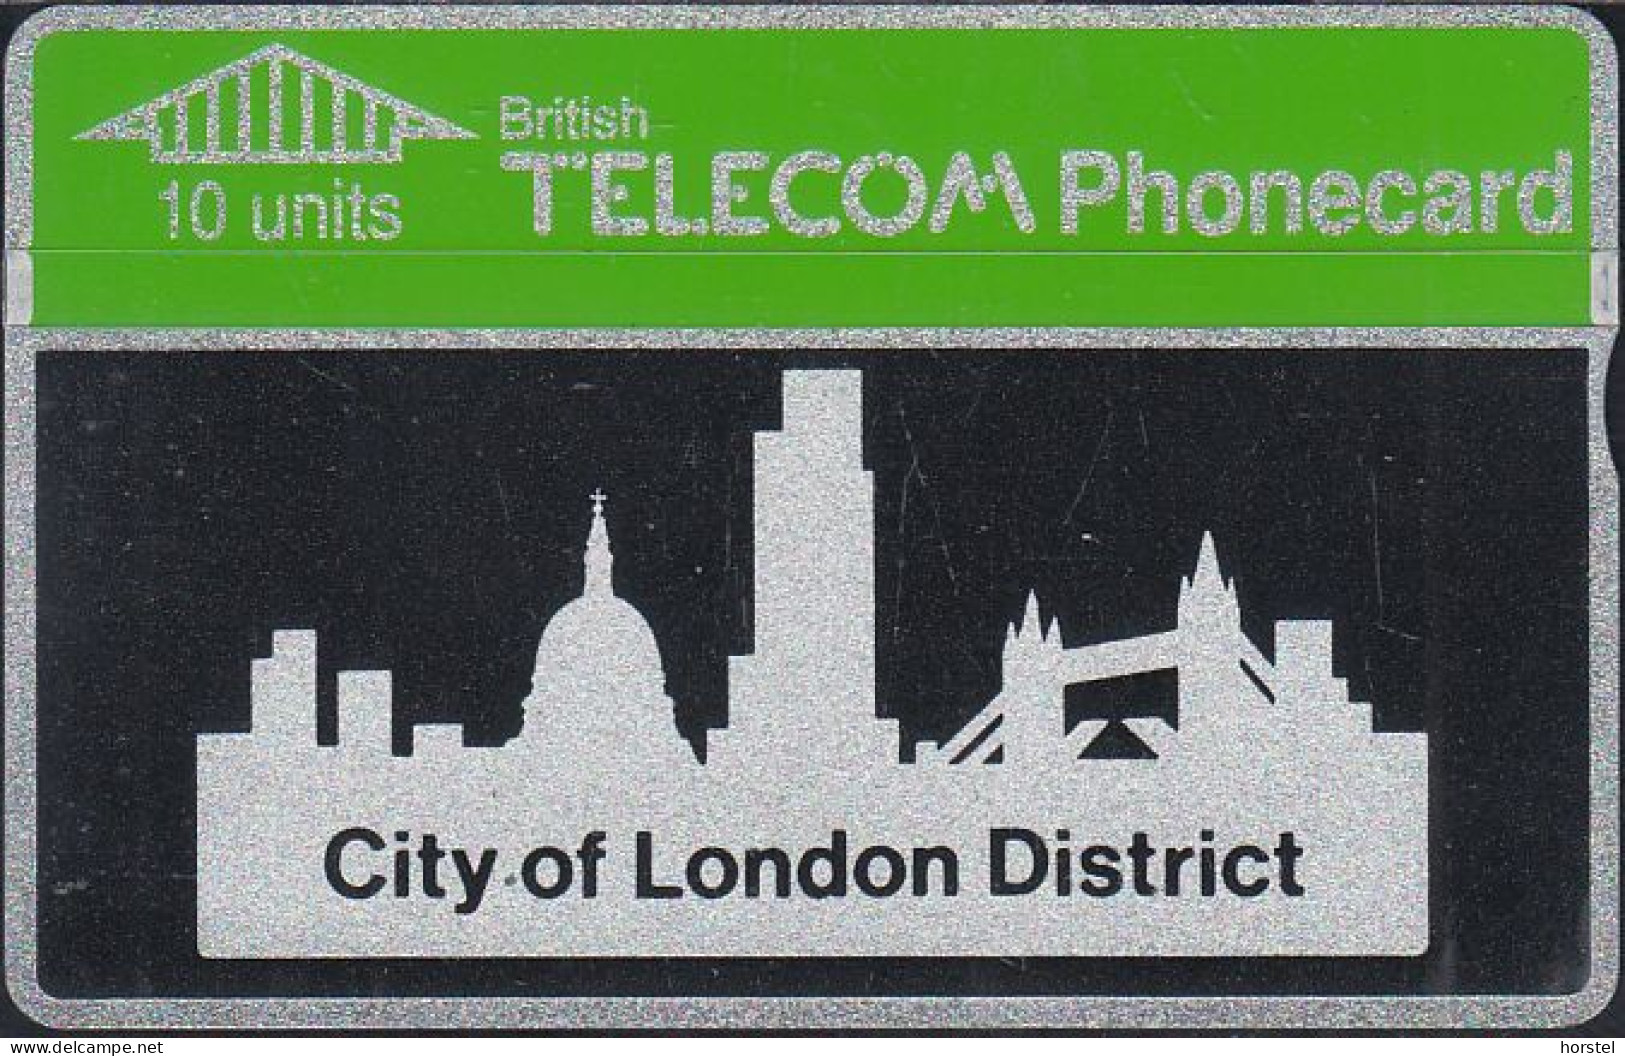 UK British Telecom Phonecard - L&G Bti 0004 - 10 Units - City Of London District - 123A - Mint - BT Edición Interna